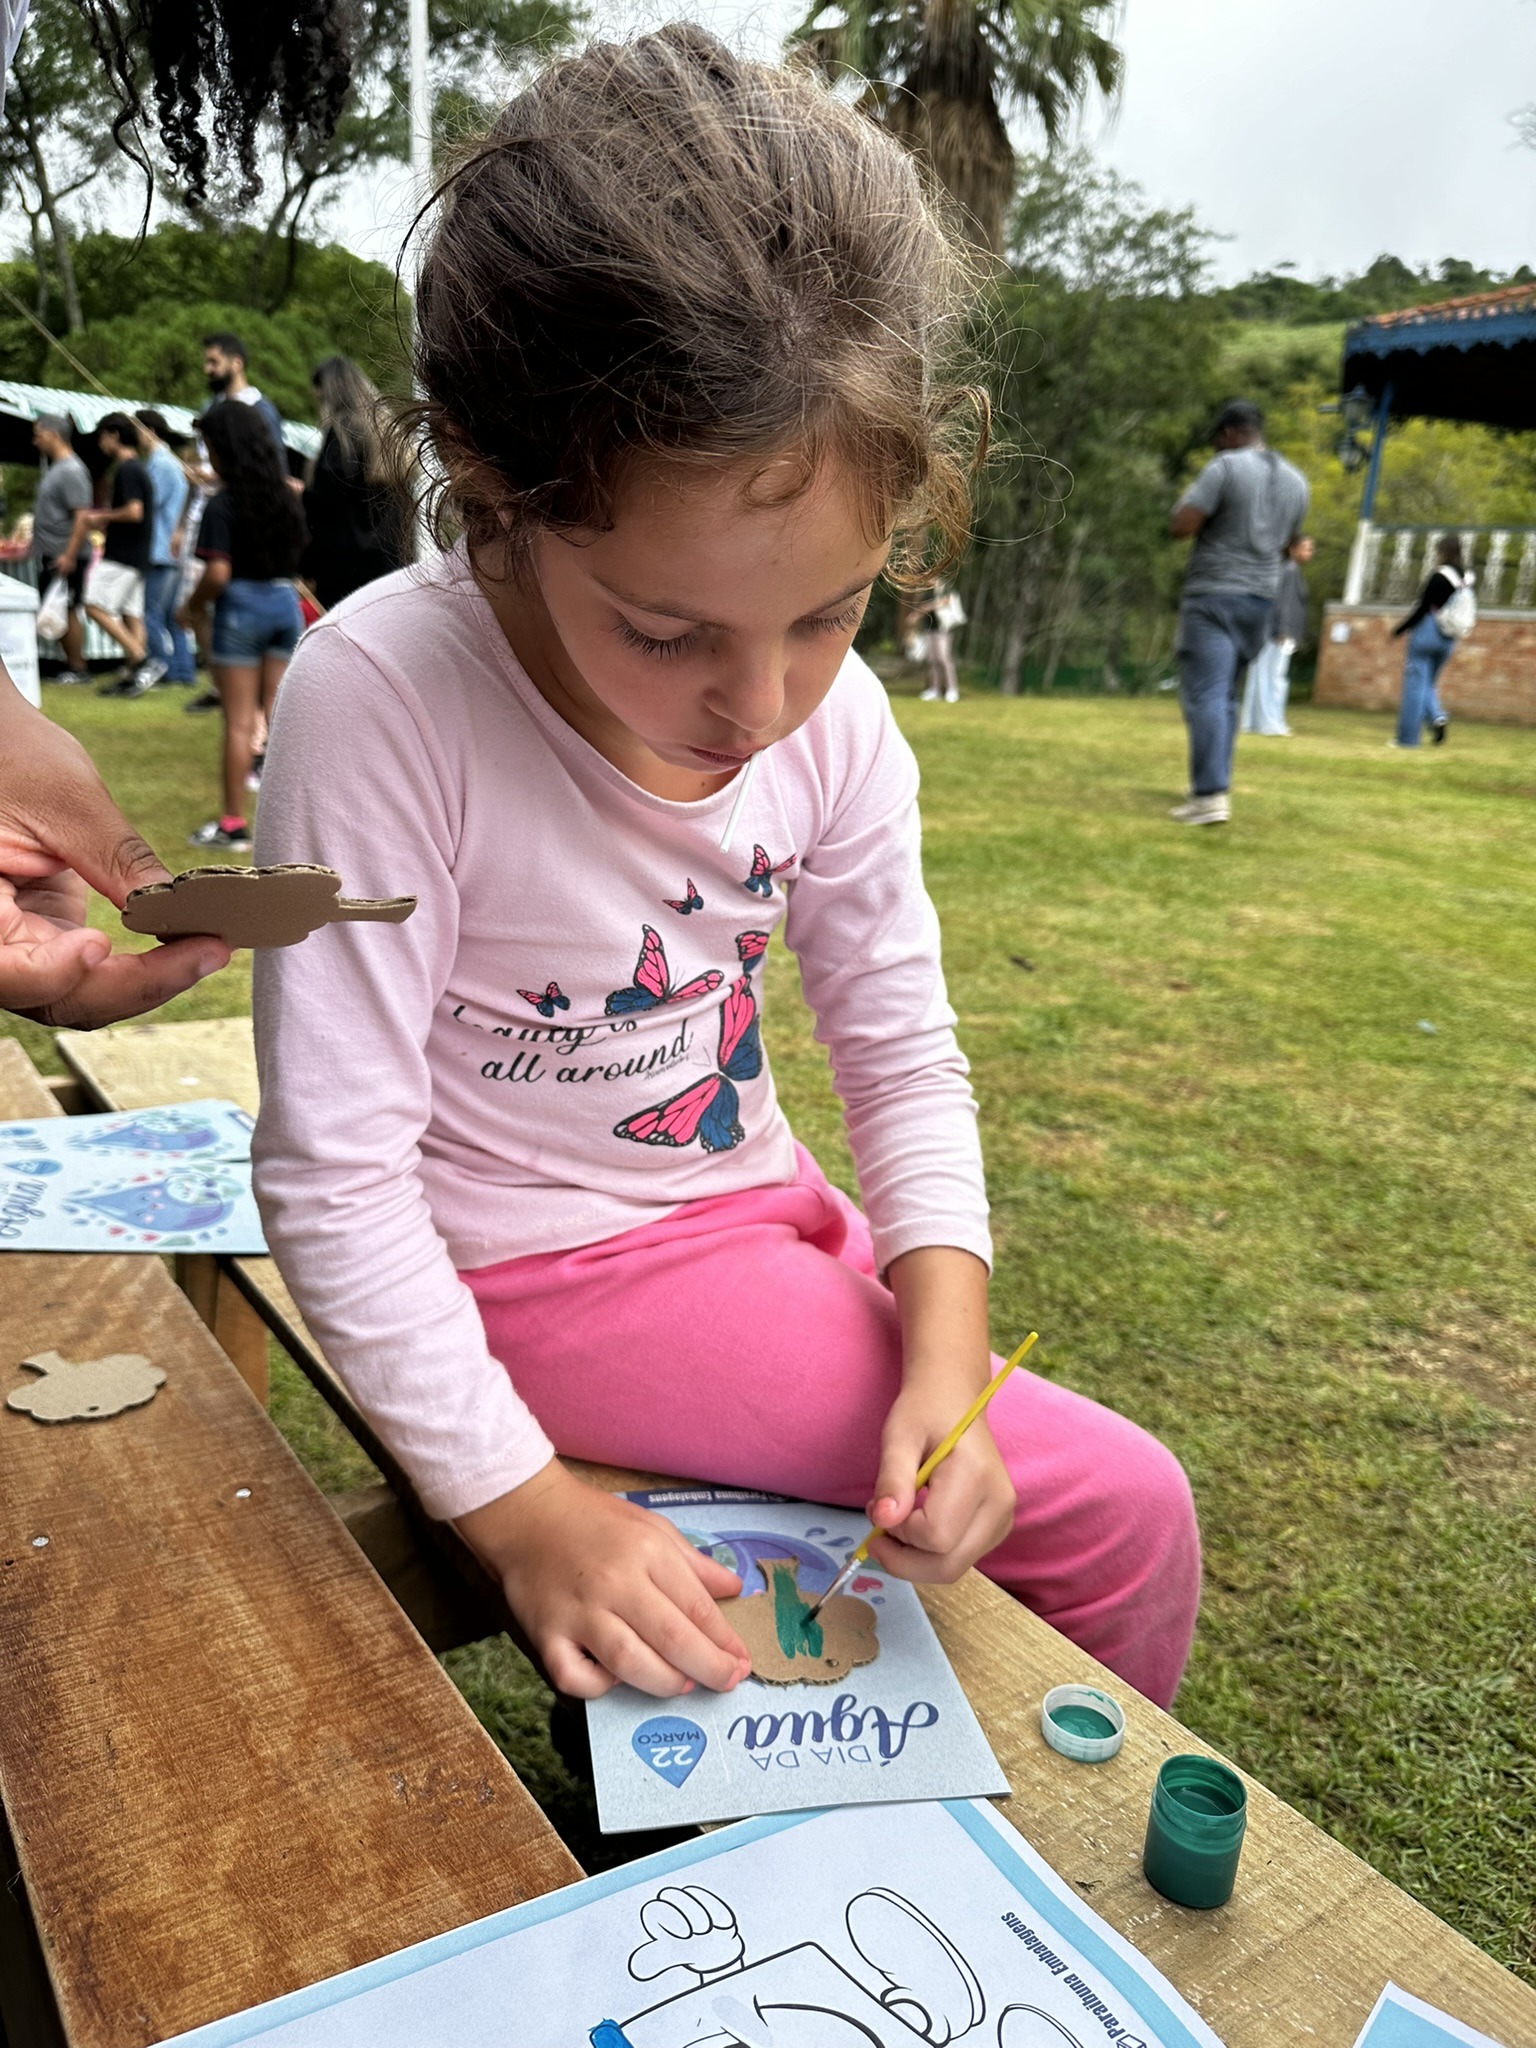 Paraibuna leva diversão ao Parque da Lajinha na celebração do Dia Mundial da Água